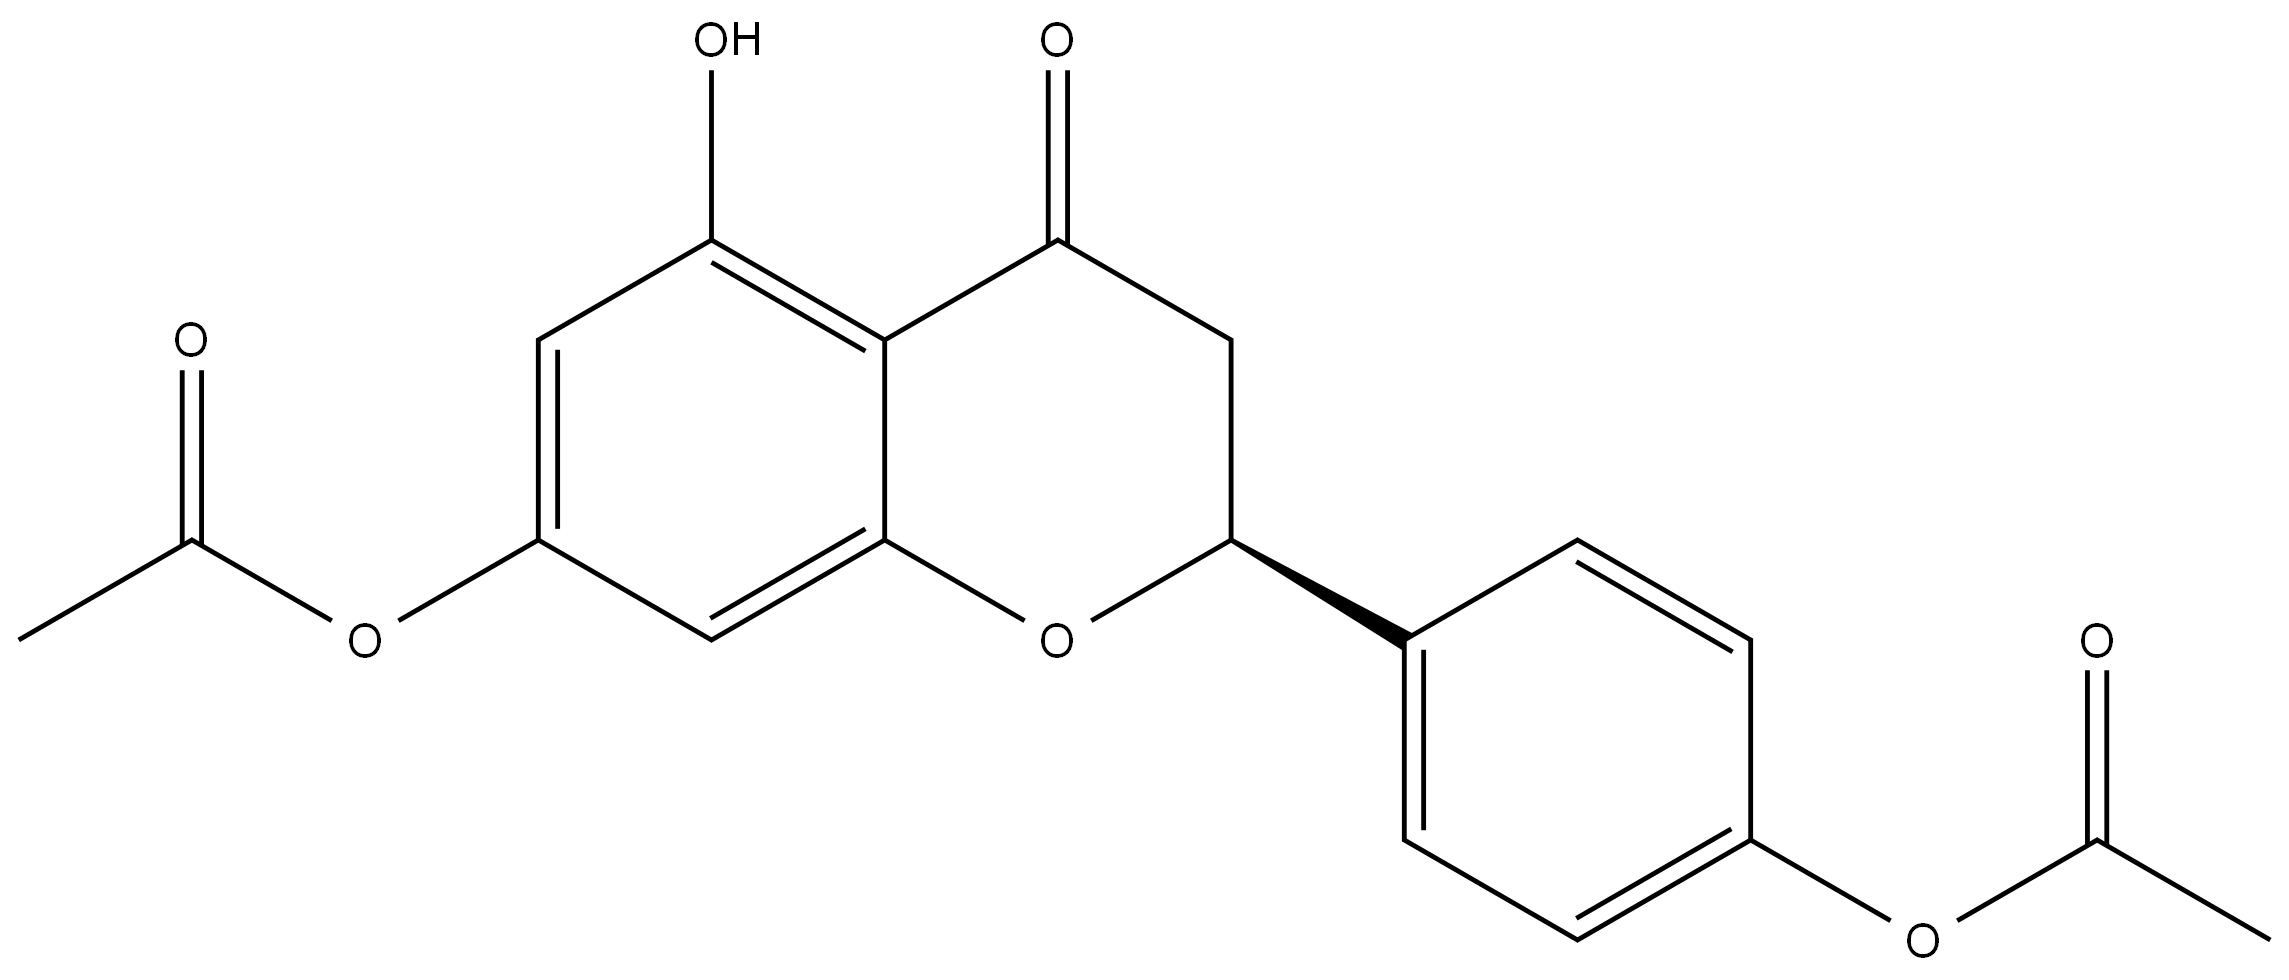 柚皮素-7,4'-二醋酸酯 丨CAS No.18196-13-9